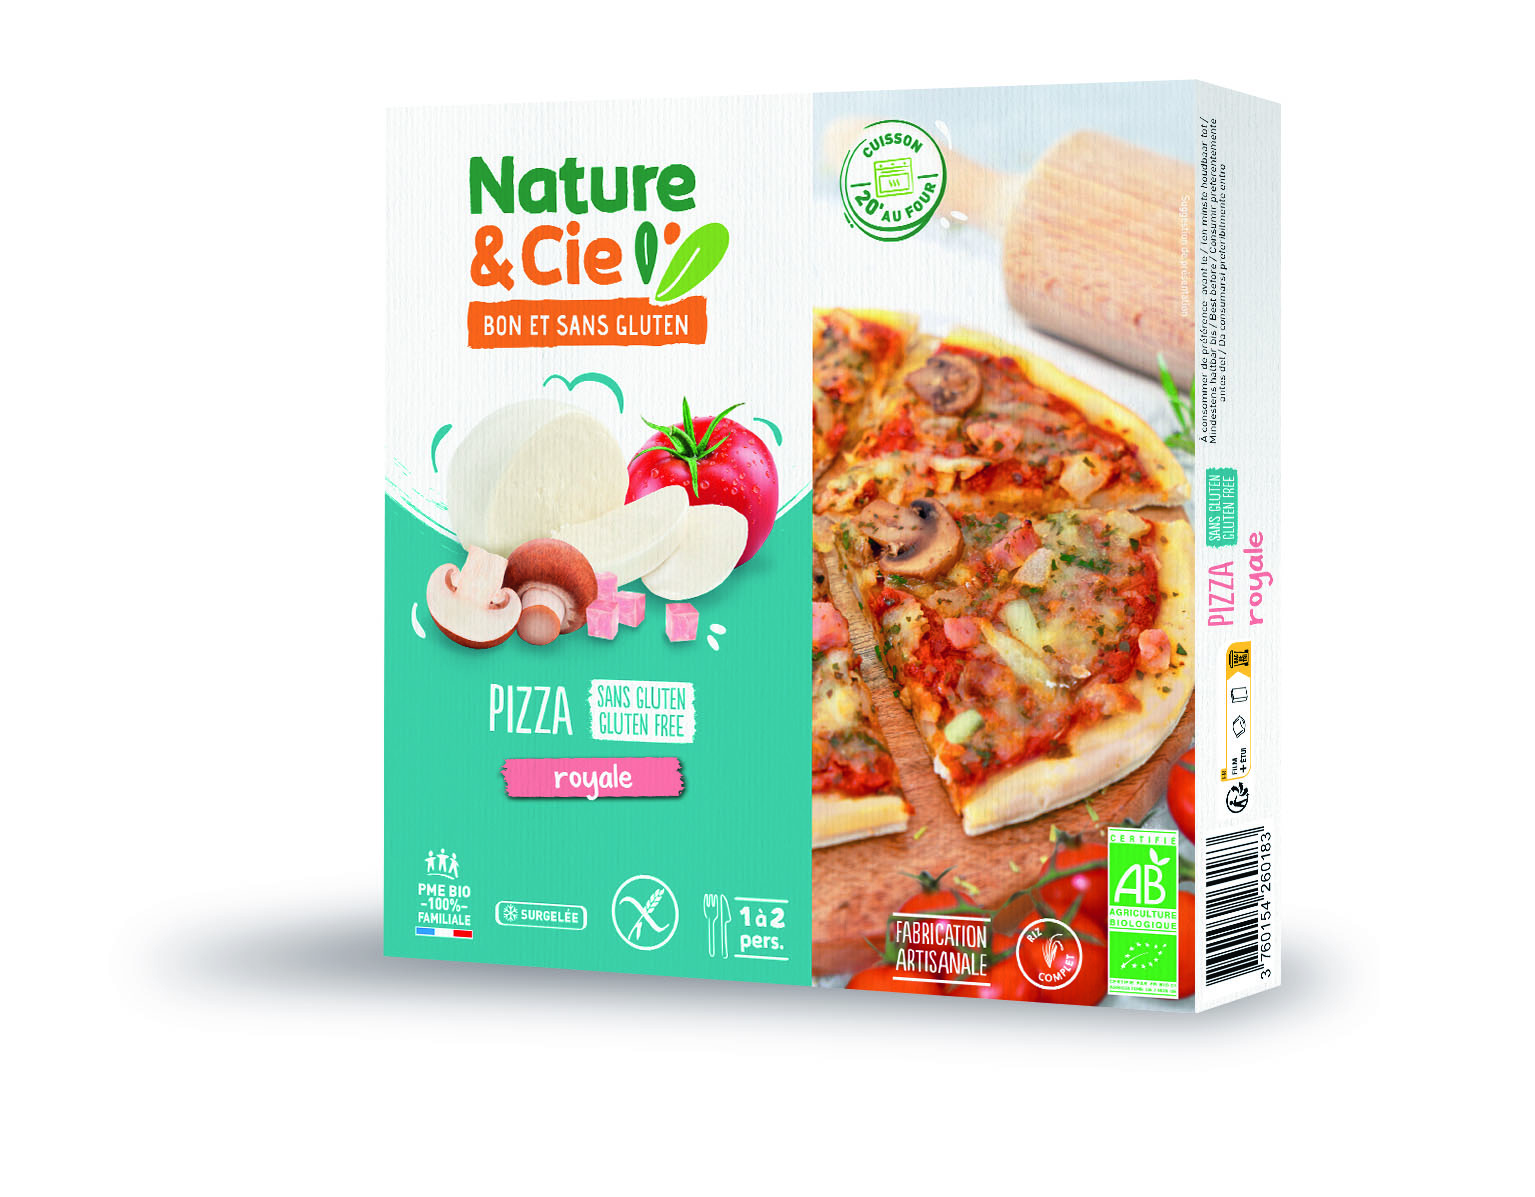 Nature & Cie Pizza royale glutenvrij & bio 270g